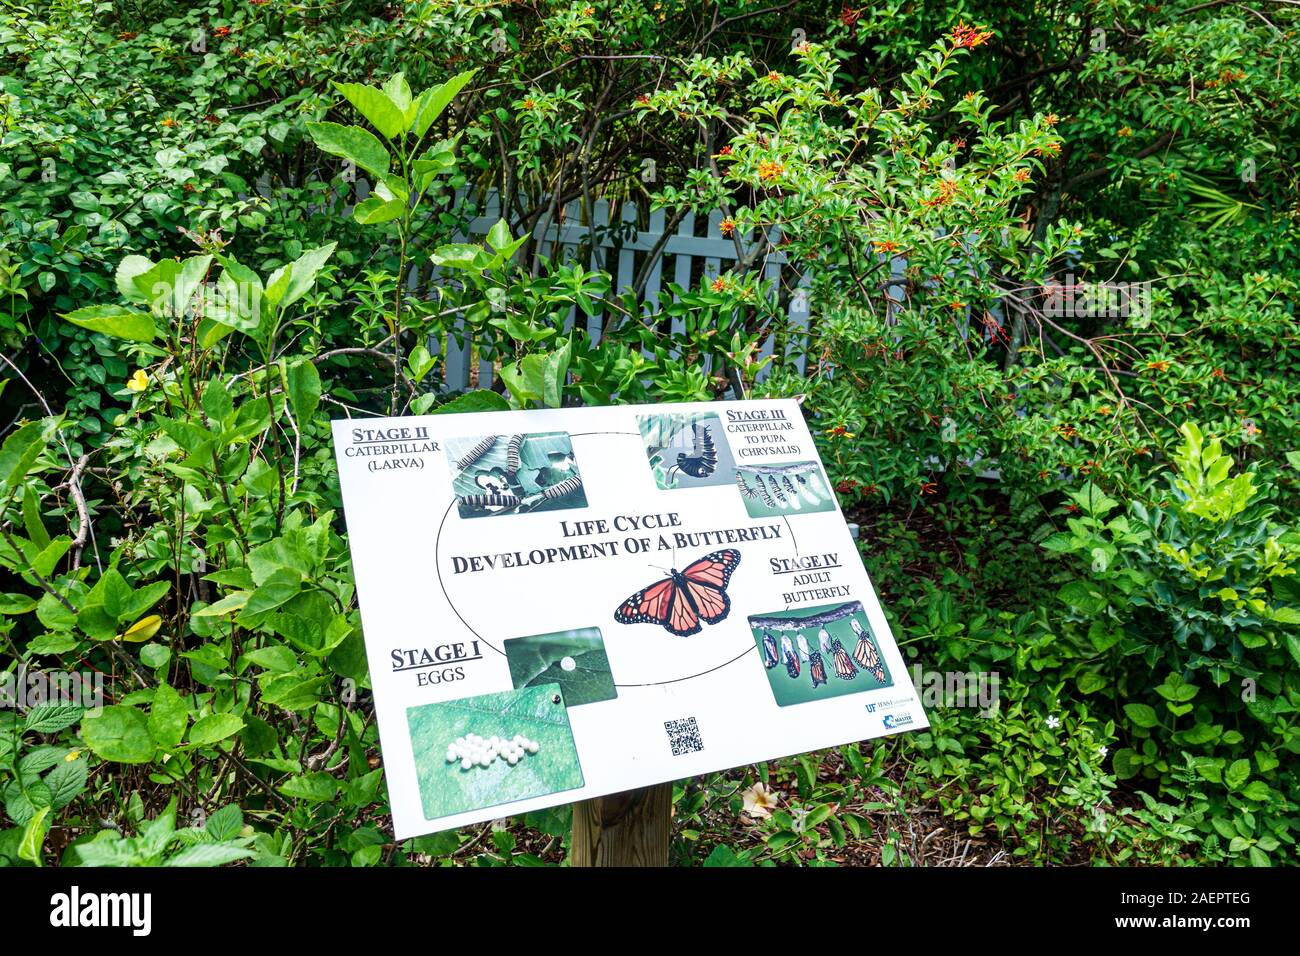 Port St. Lucie Florida, Port St. Lucie Botanical Gardens, giardino delle farfalle, mostra interpretativa, diagramma del ciclo di vita, vegetazione, informazioni sui segni, FL1 Foto Stock